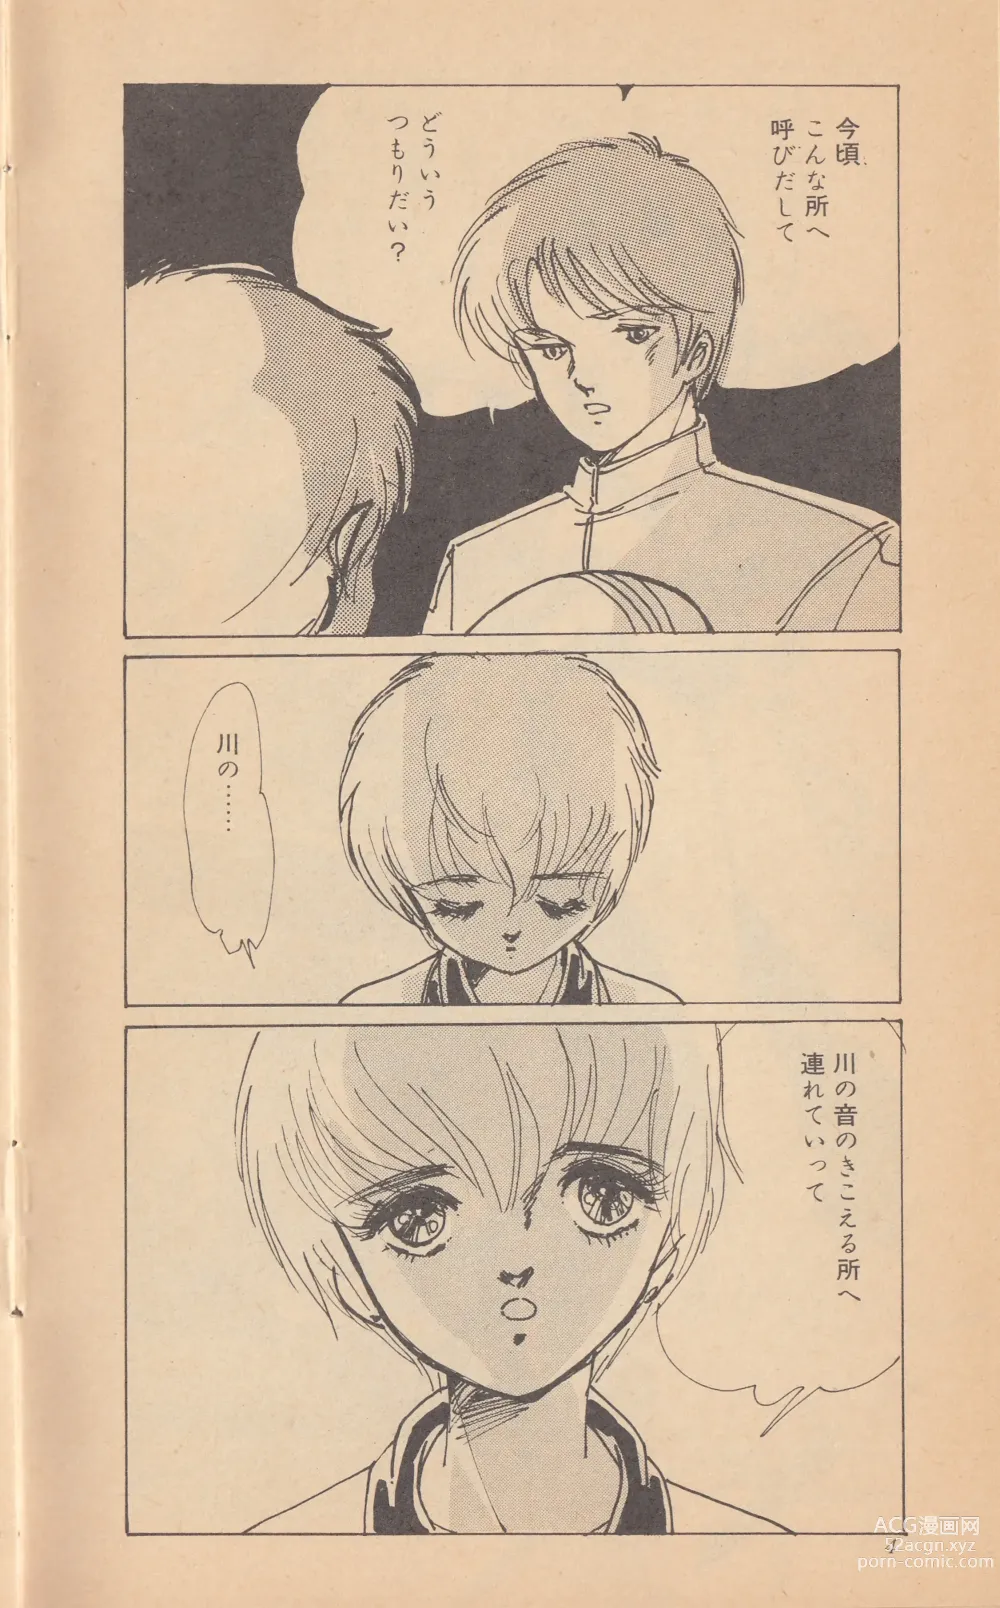 Page 6 of doujinshi Shining May Image Storybook